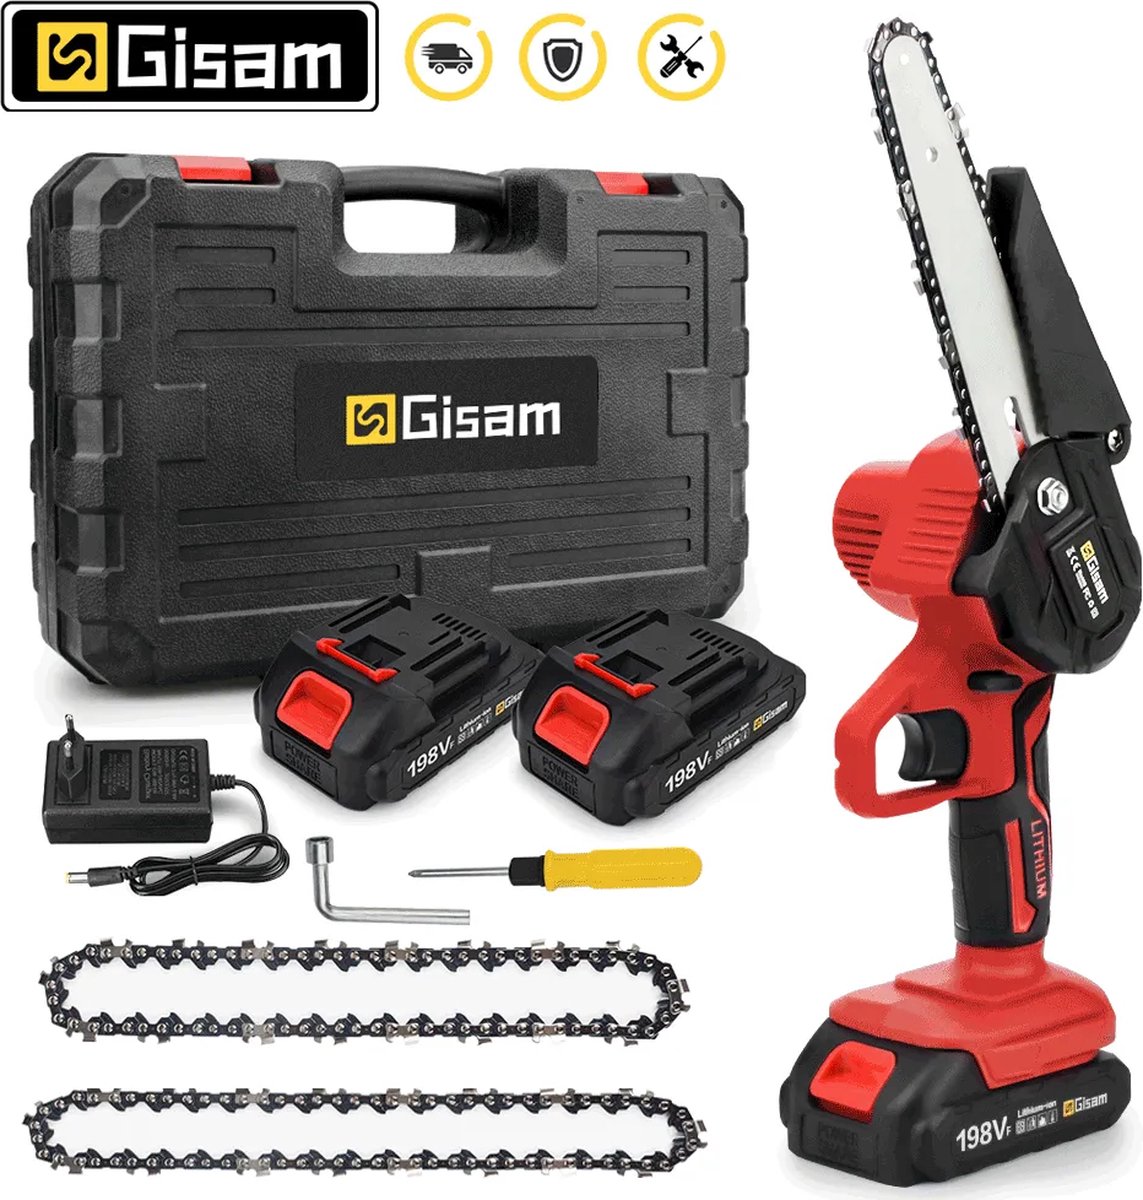 GISAM - Elektrische Kettingzaag - Oplaadbaar - 2 Batterijen - 6 Inch - Red